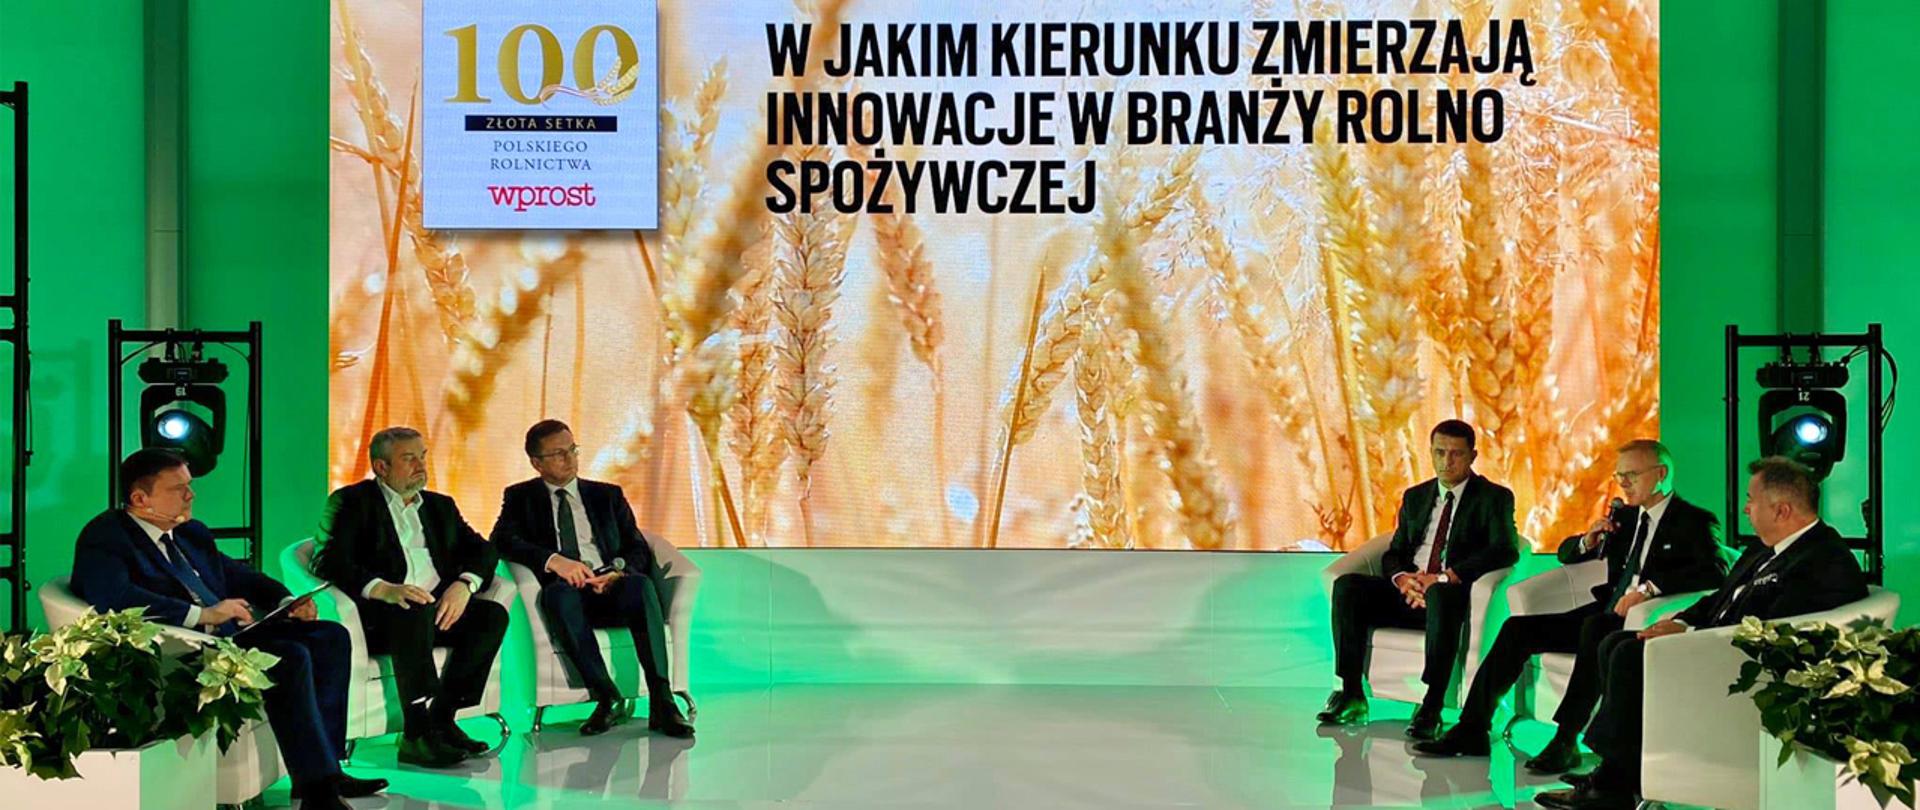 Złota 100 Polskiego Rolnictwa